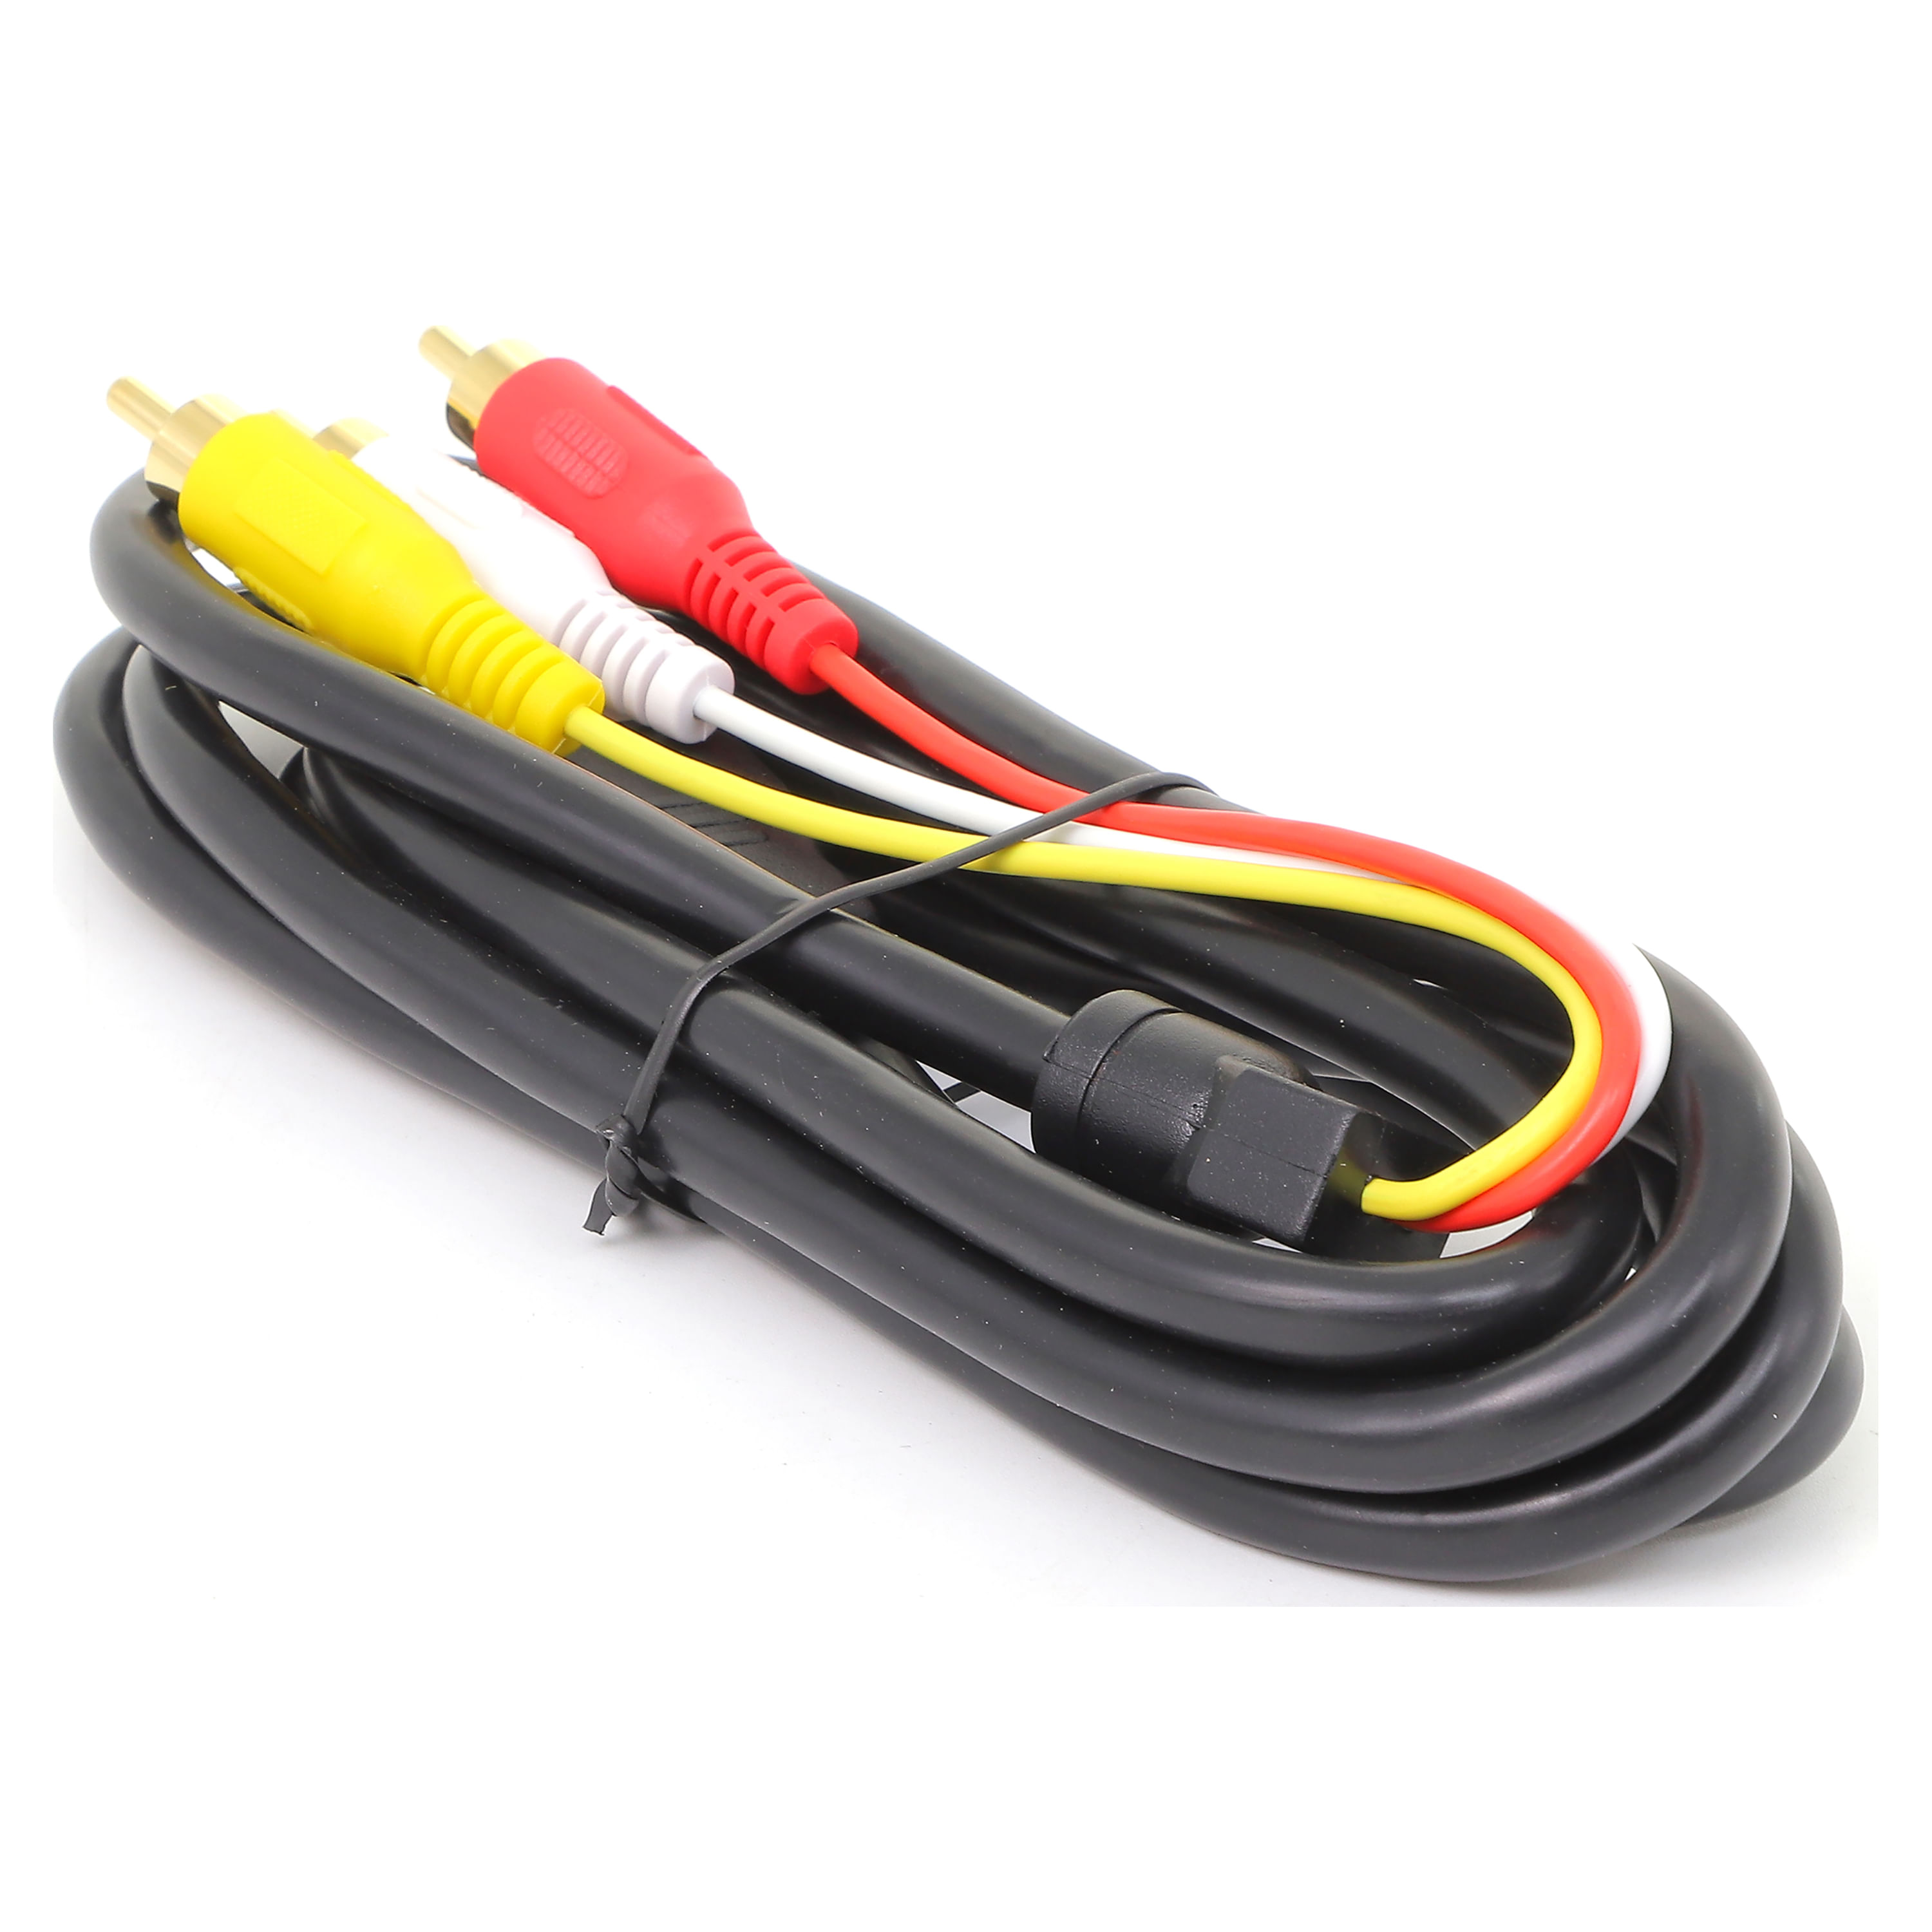 Cable Tipo-C a HDMI – ELECTRÓNICA GUATEMALA OXDEA